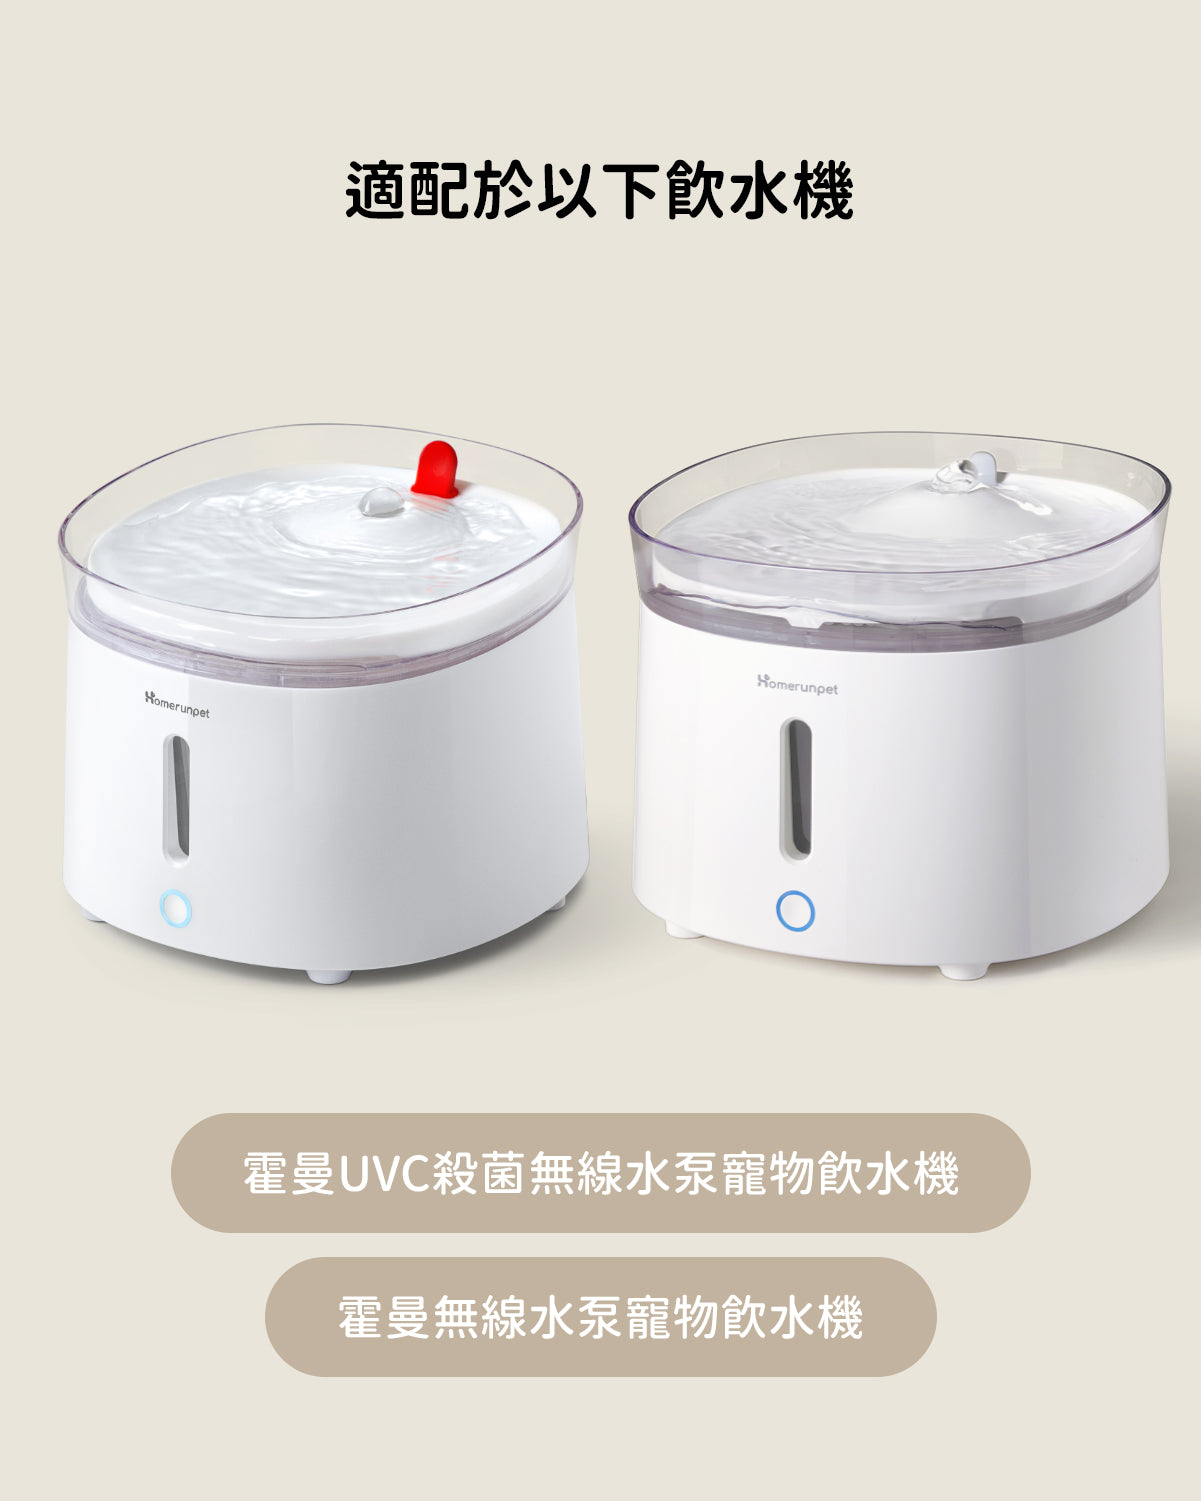 霍曼無線水泵清潔套裝  Homerunpet Taiwan   